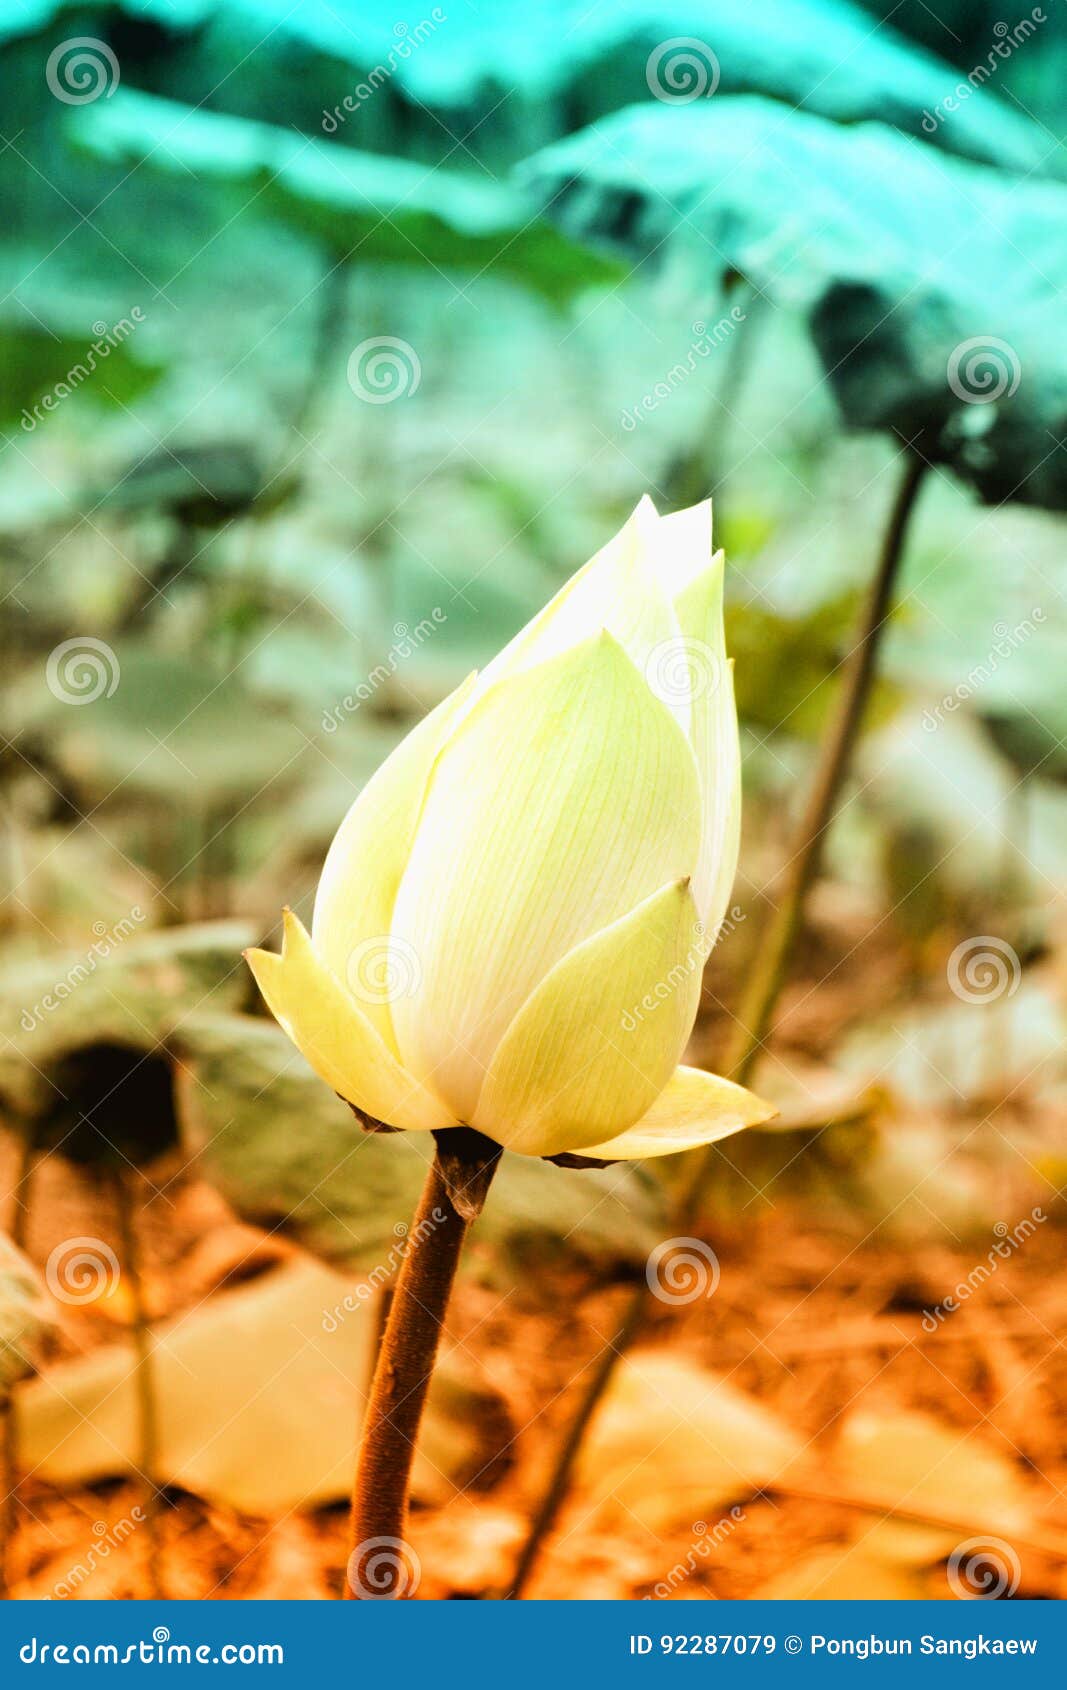 white lotus flower filter efect